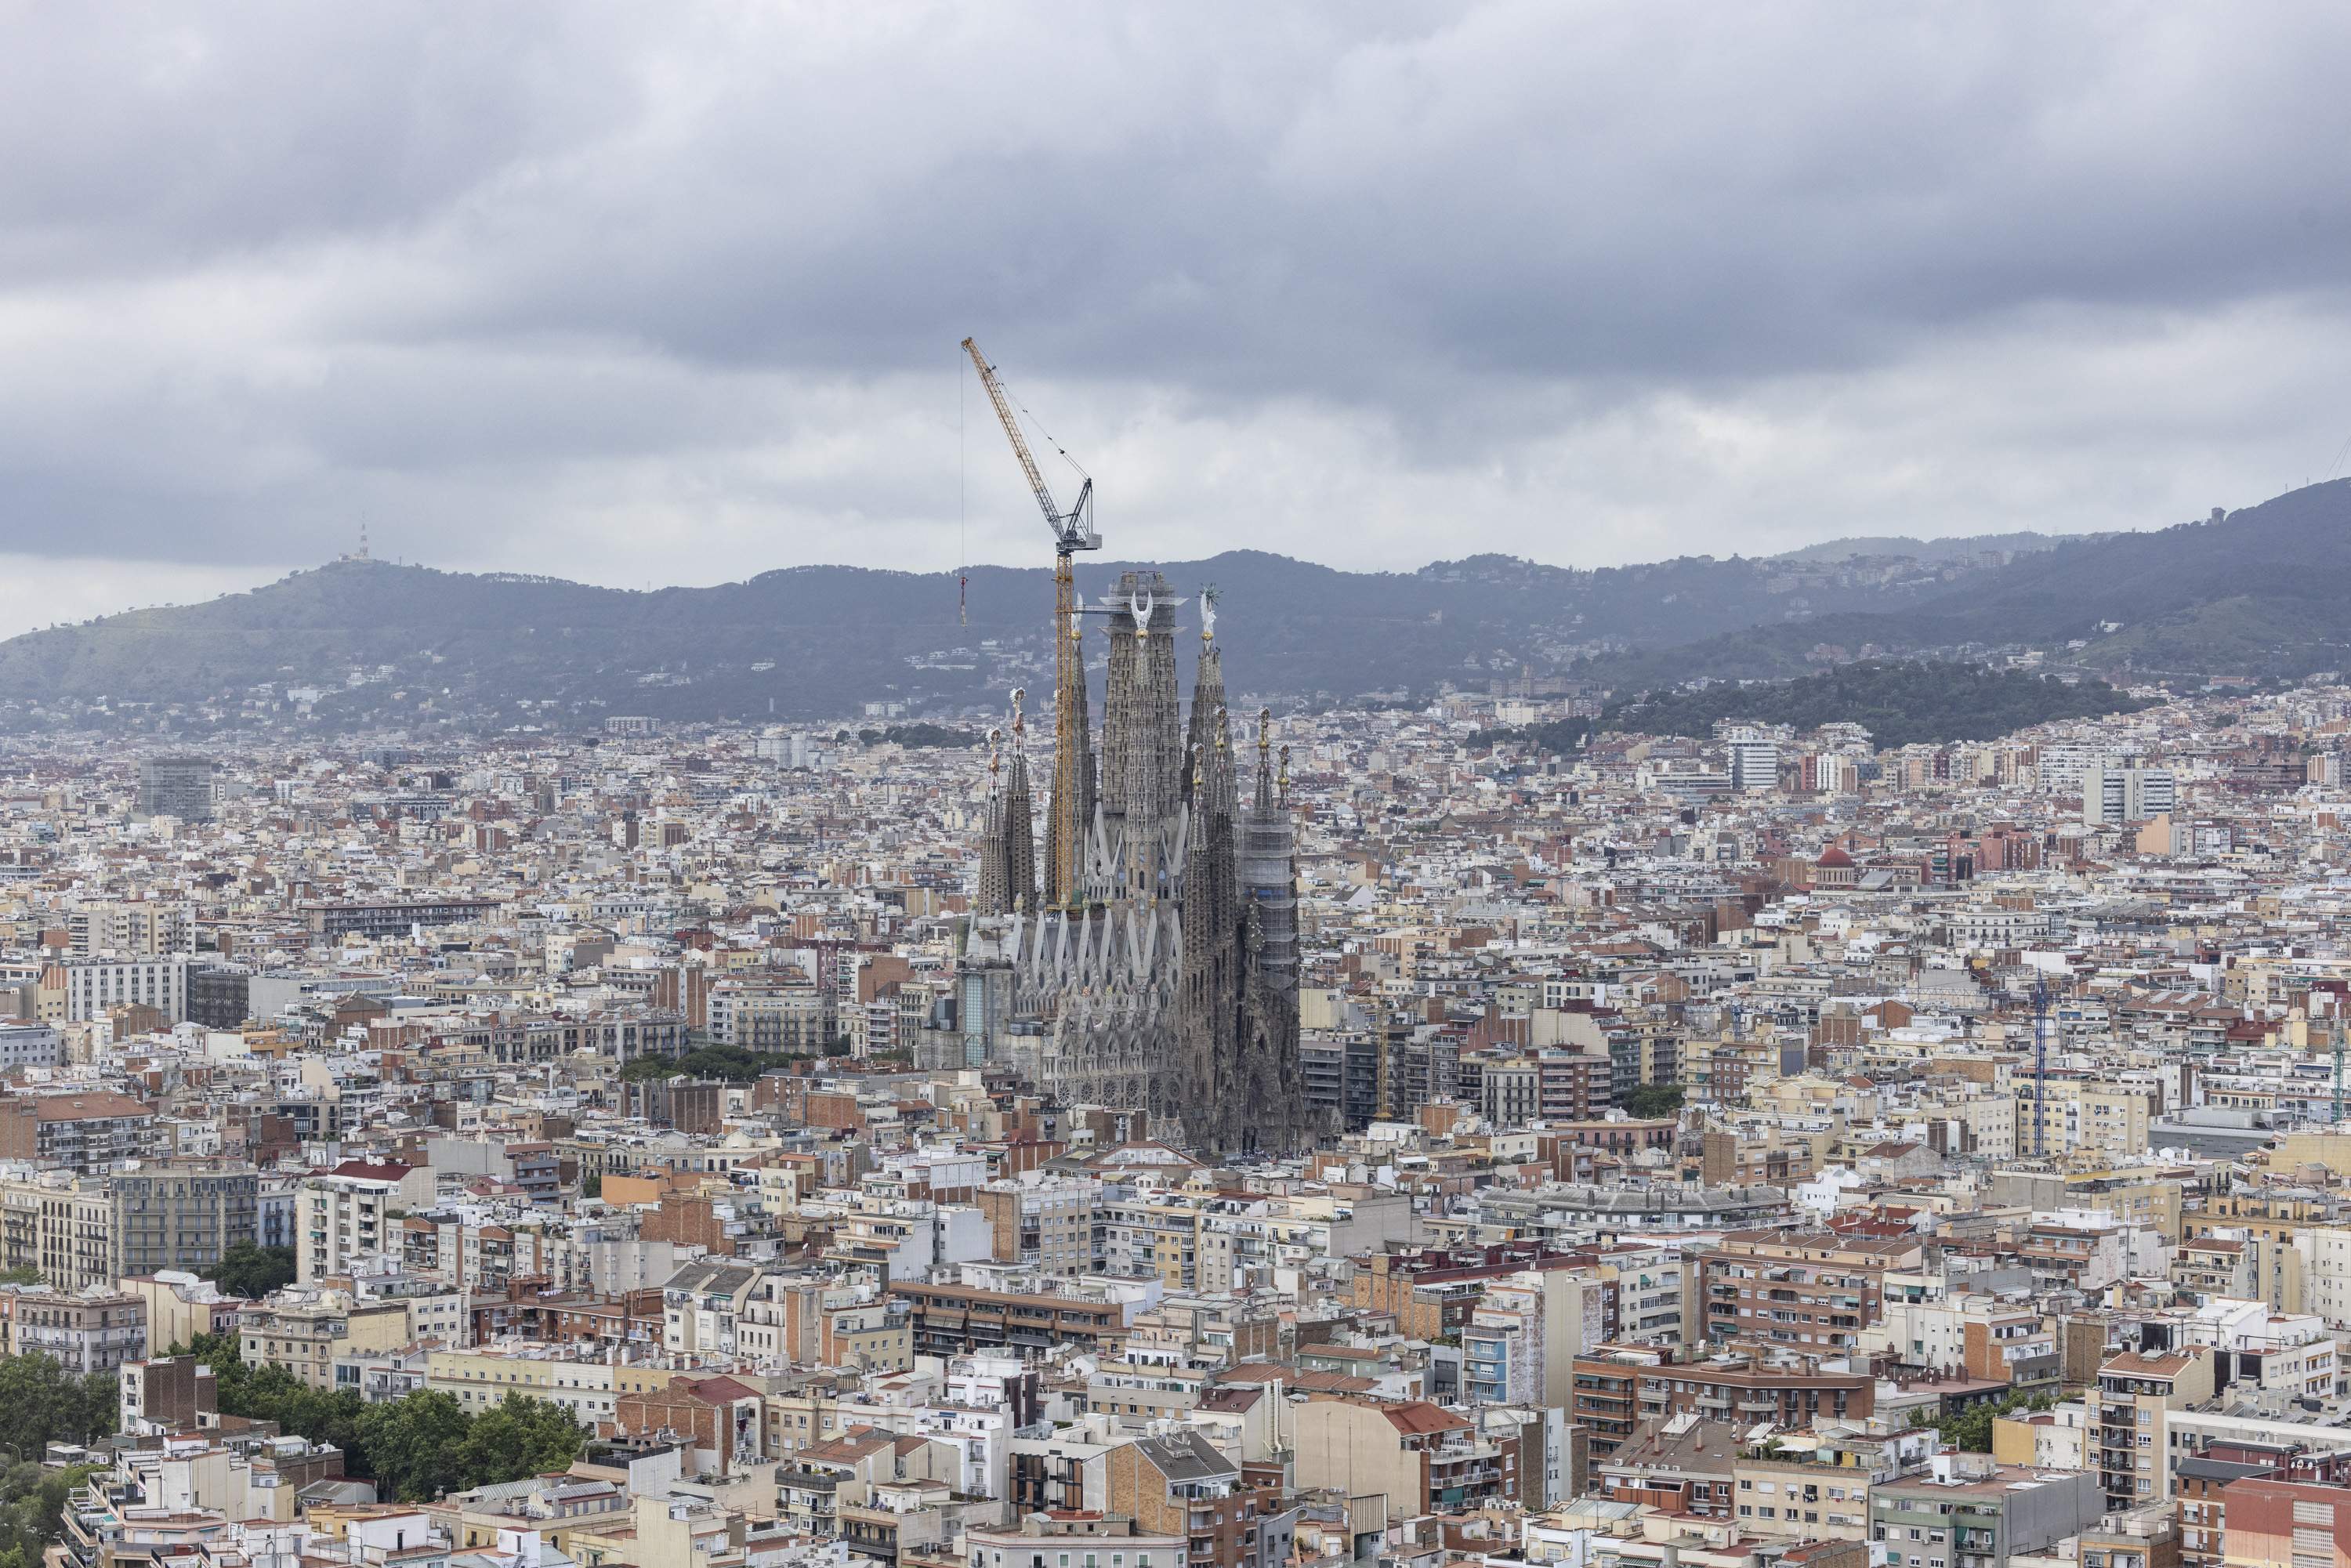 La torre de Jesús ja és la més alta de la Sagrada Família